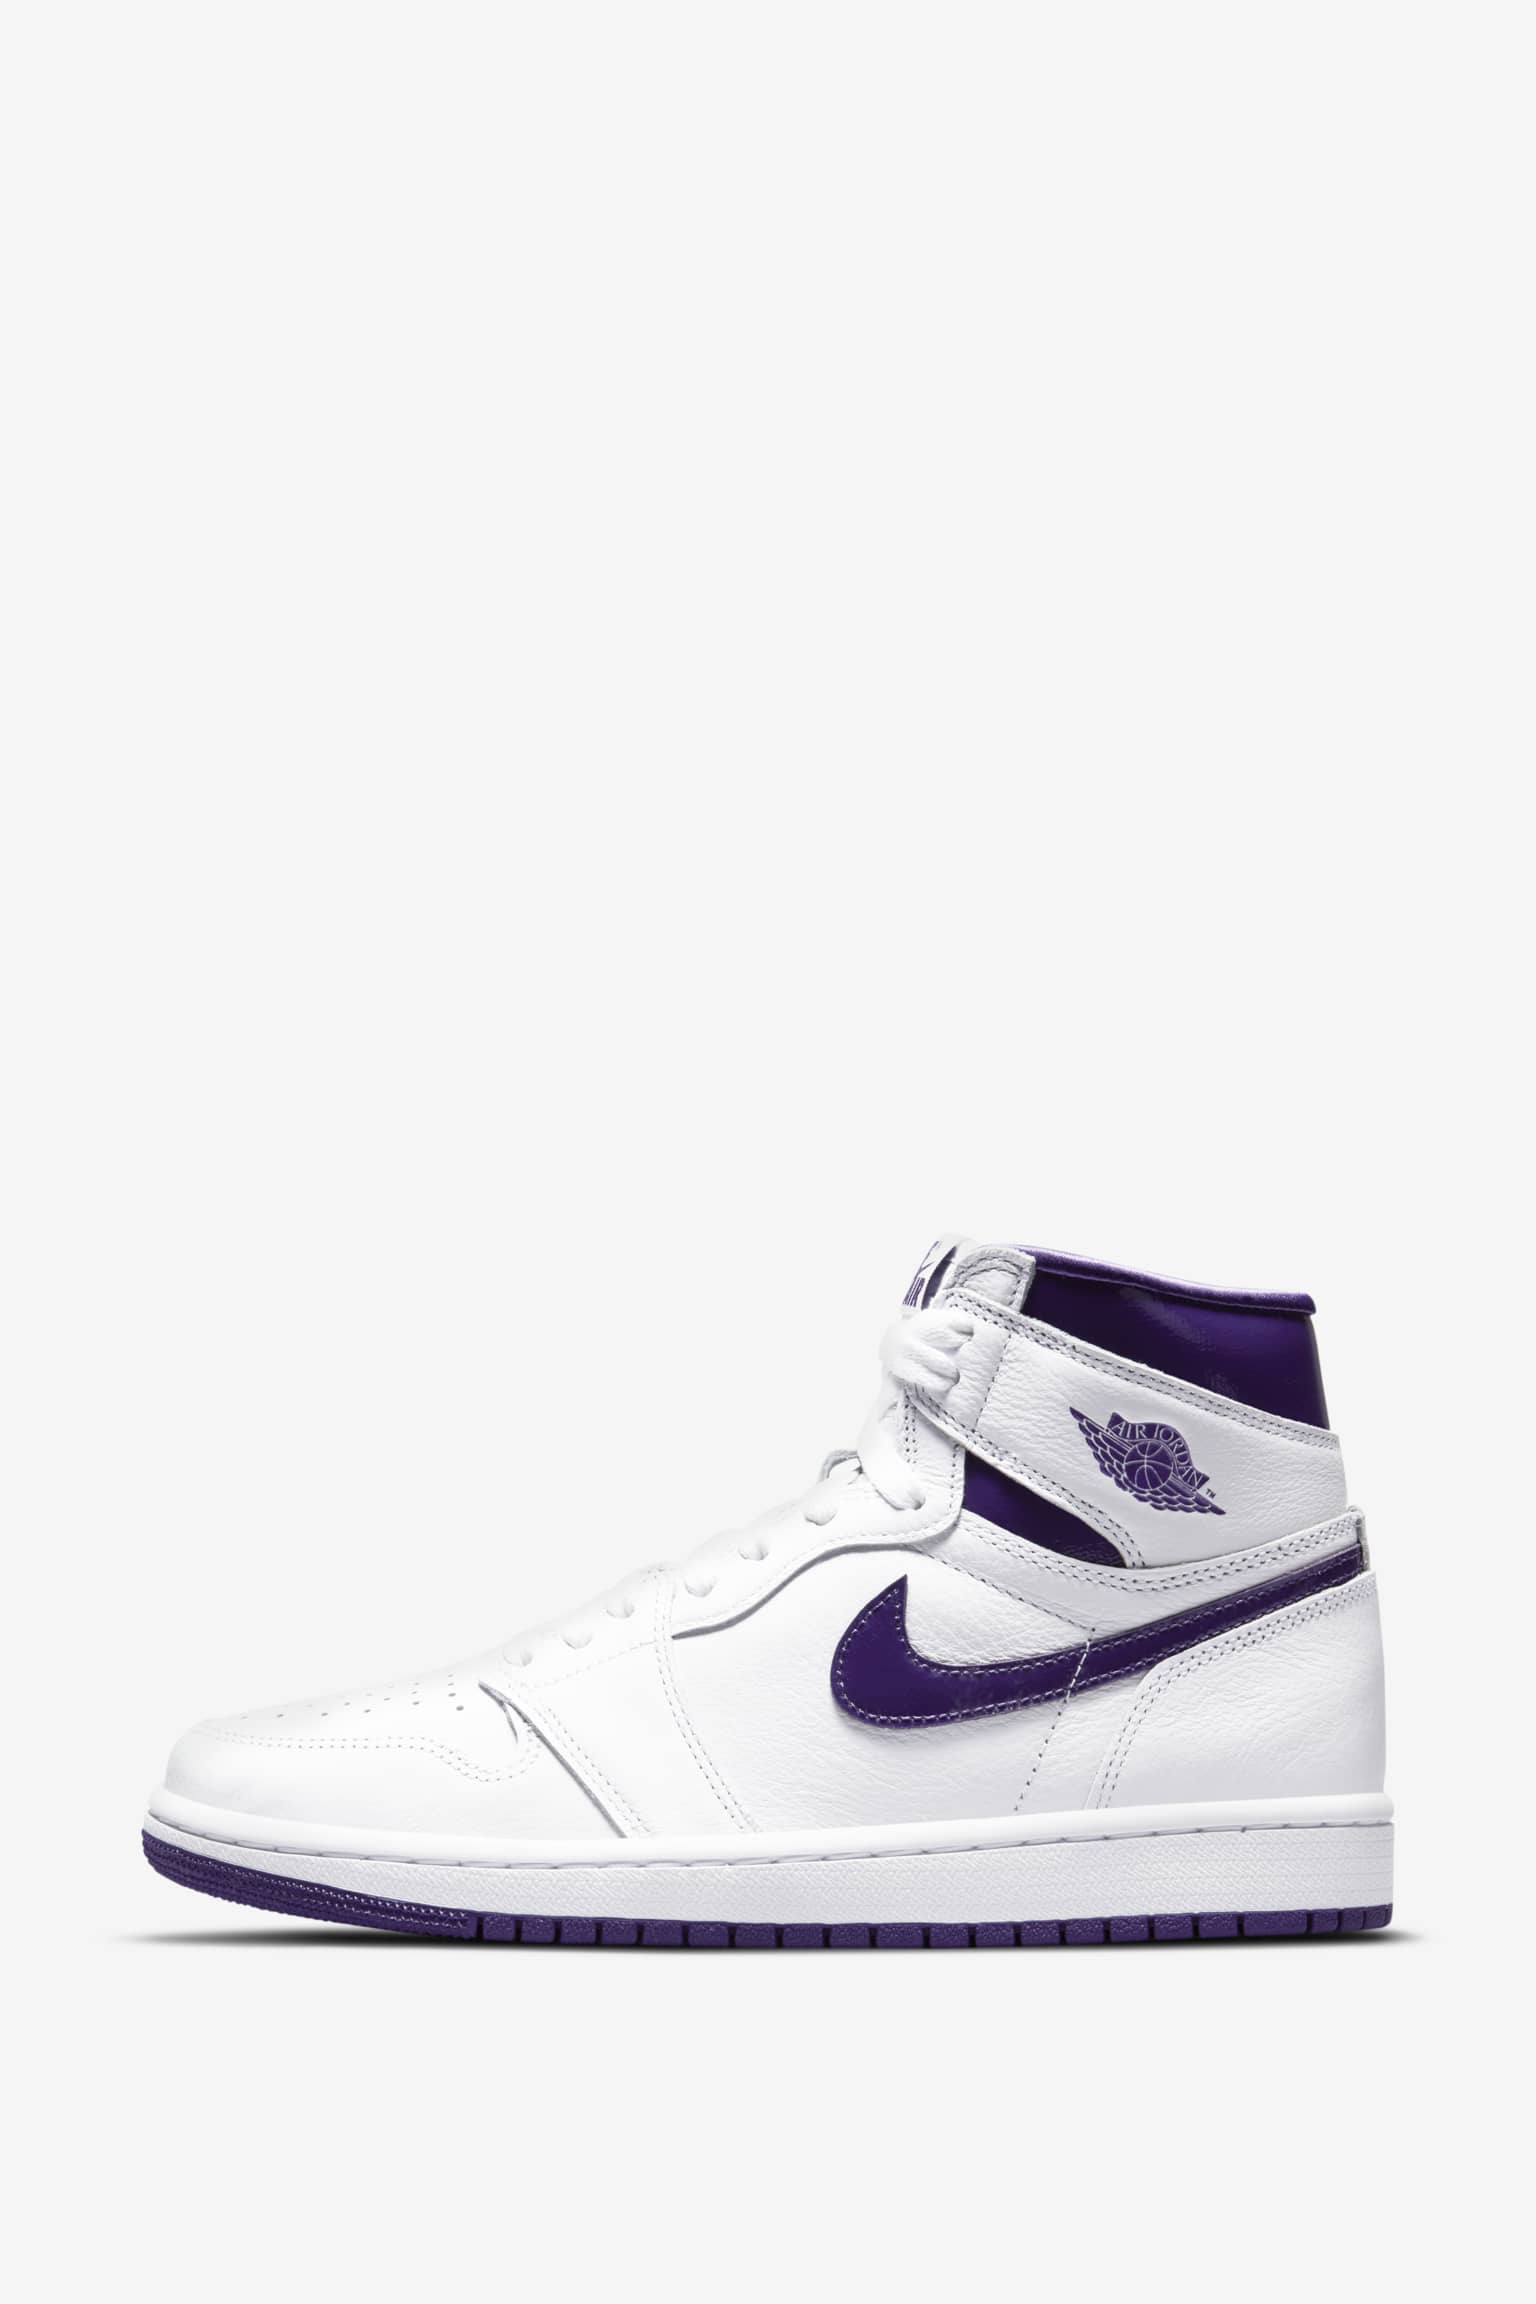 Women's Air Jordan 1 'Court Purple' Release Date. Nike SNKRS ID